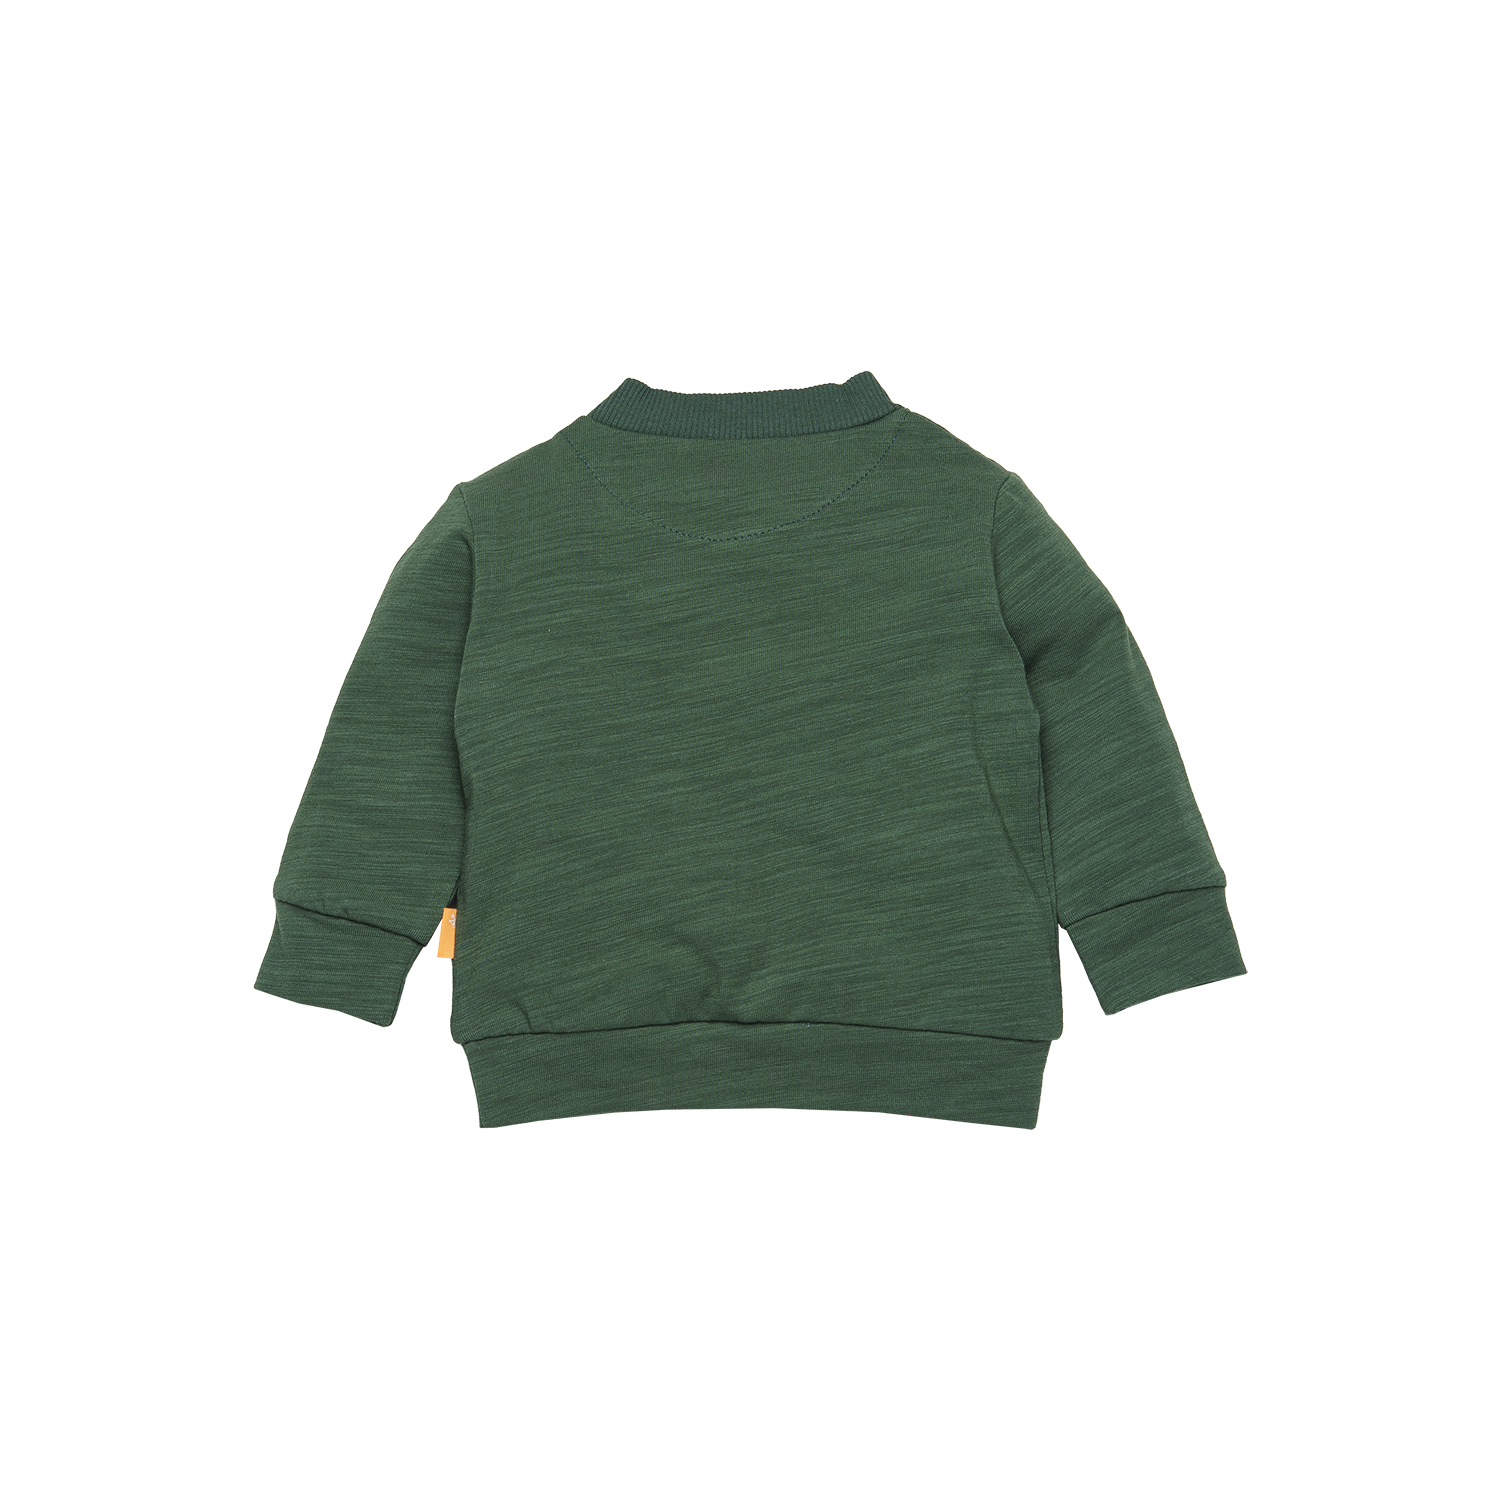 Jongens Sweater BESS van B.E.S.S. in de kleur Green in maat 68.